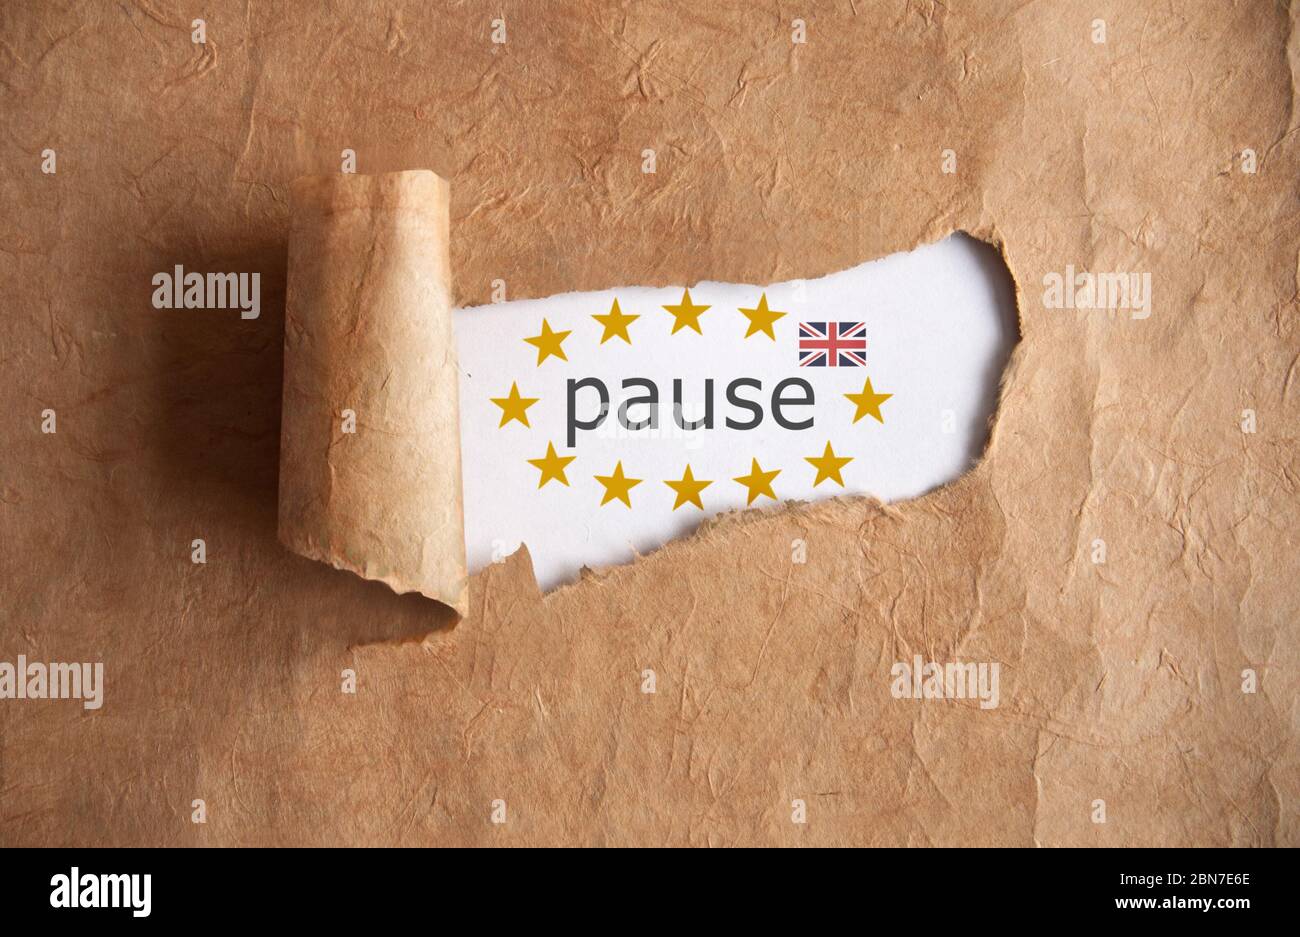 Brexit zerrissenes Stück Schriftrolle, das das Wort Pause mit stars der eu-Mitgliedsstaaten und flagge des vereinigten Königreichs enthüllt Stockfoto